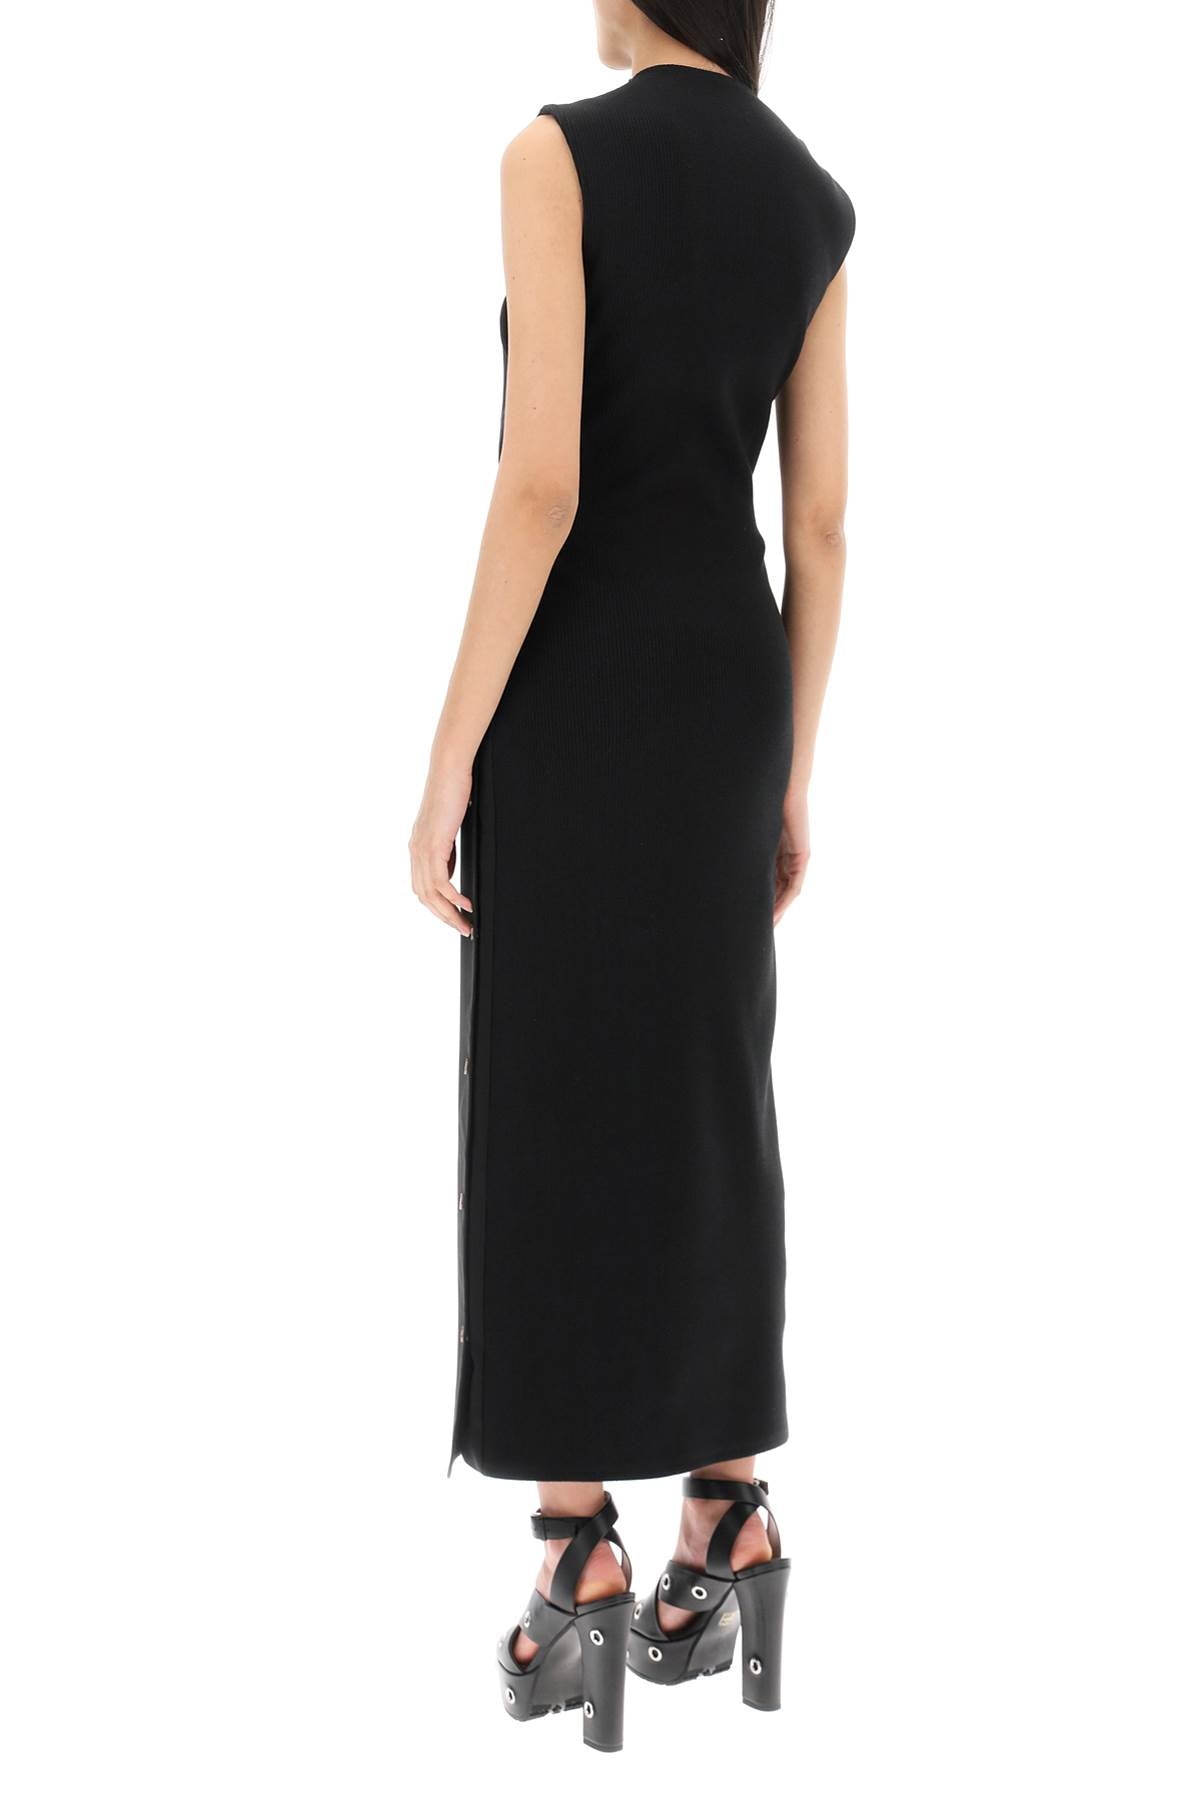 فستان بدون أكمام قابل للتعديل متعدد الاستخدامات للنساء من الصوف الأسود ذو اللون التونال مع ألواح قابلة للفصل